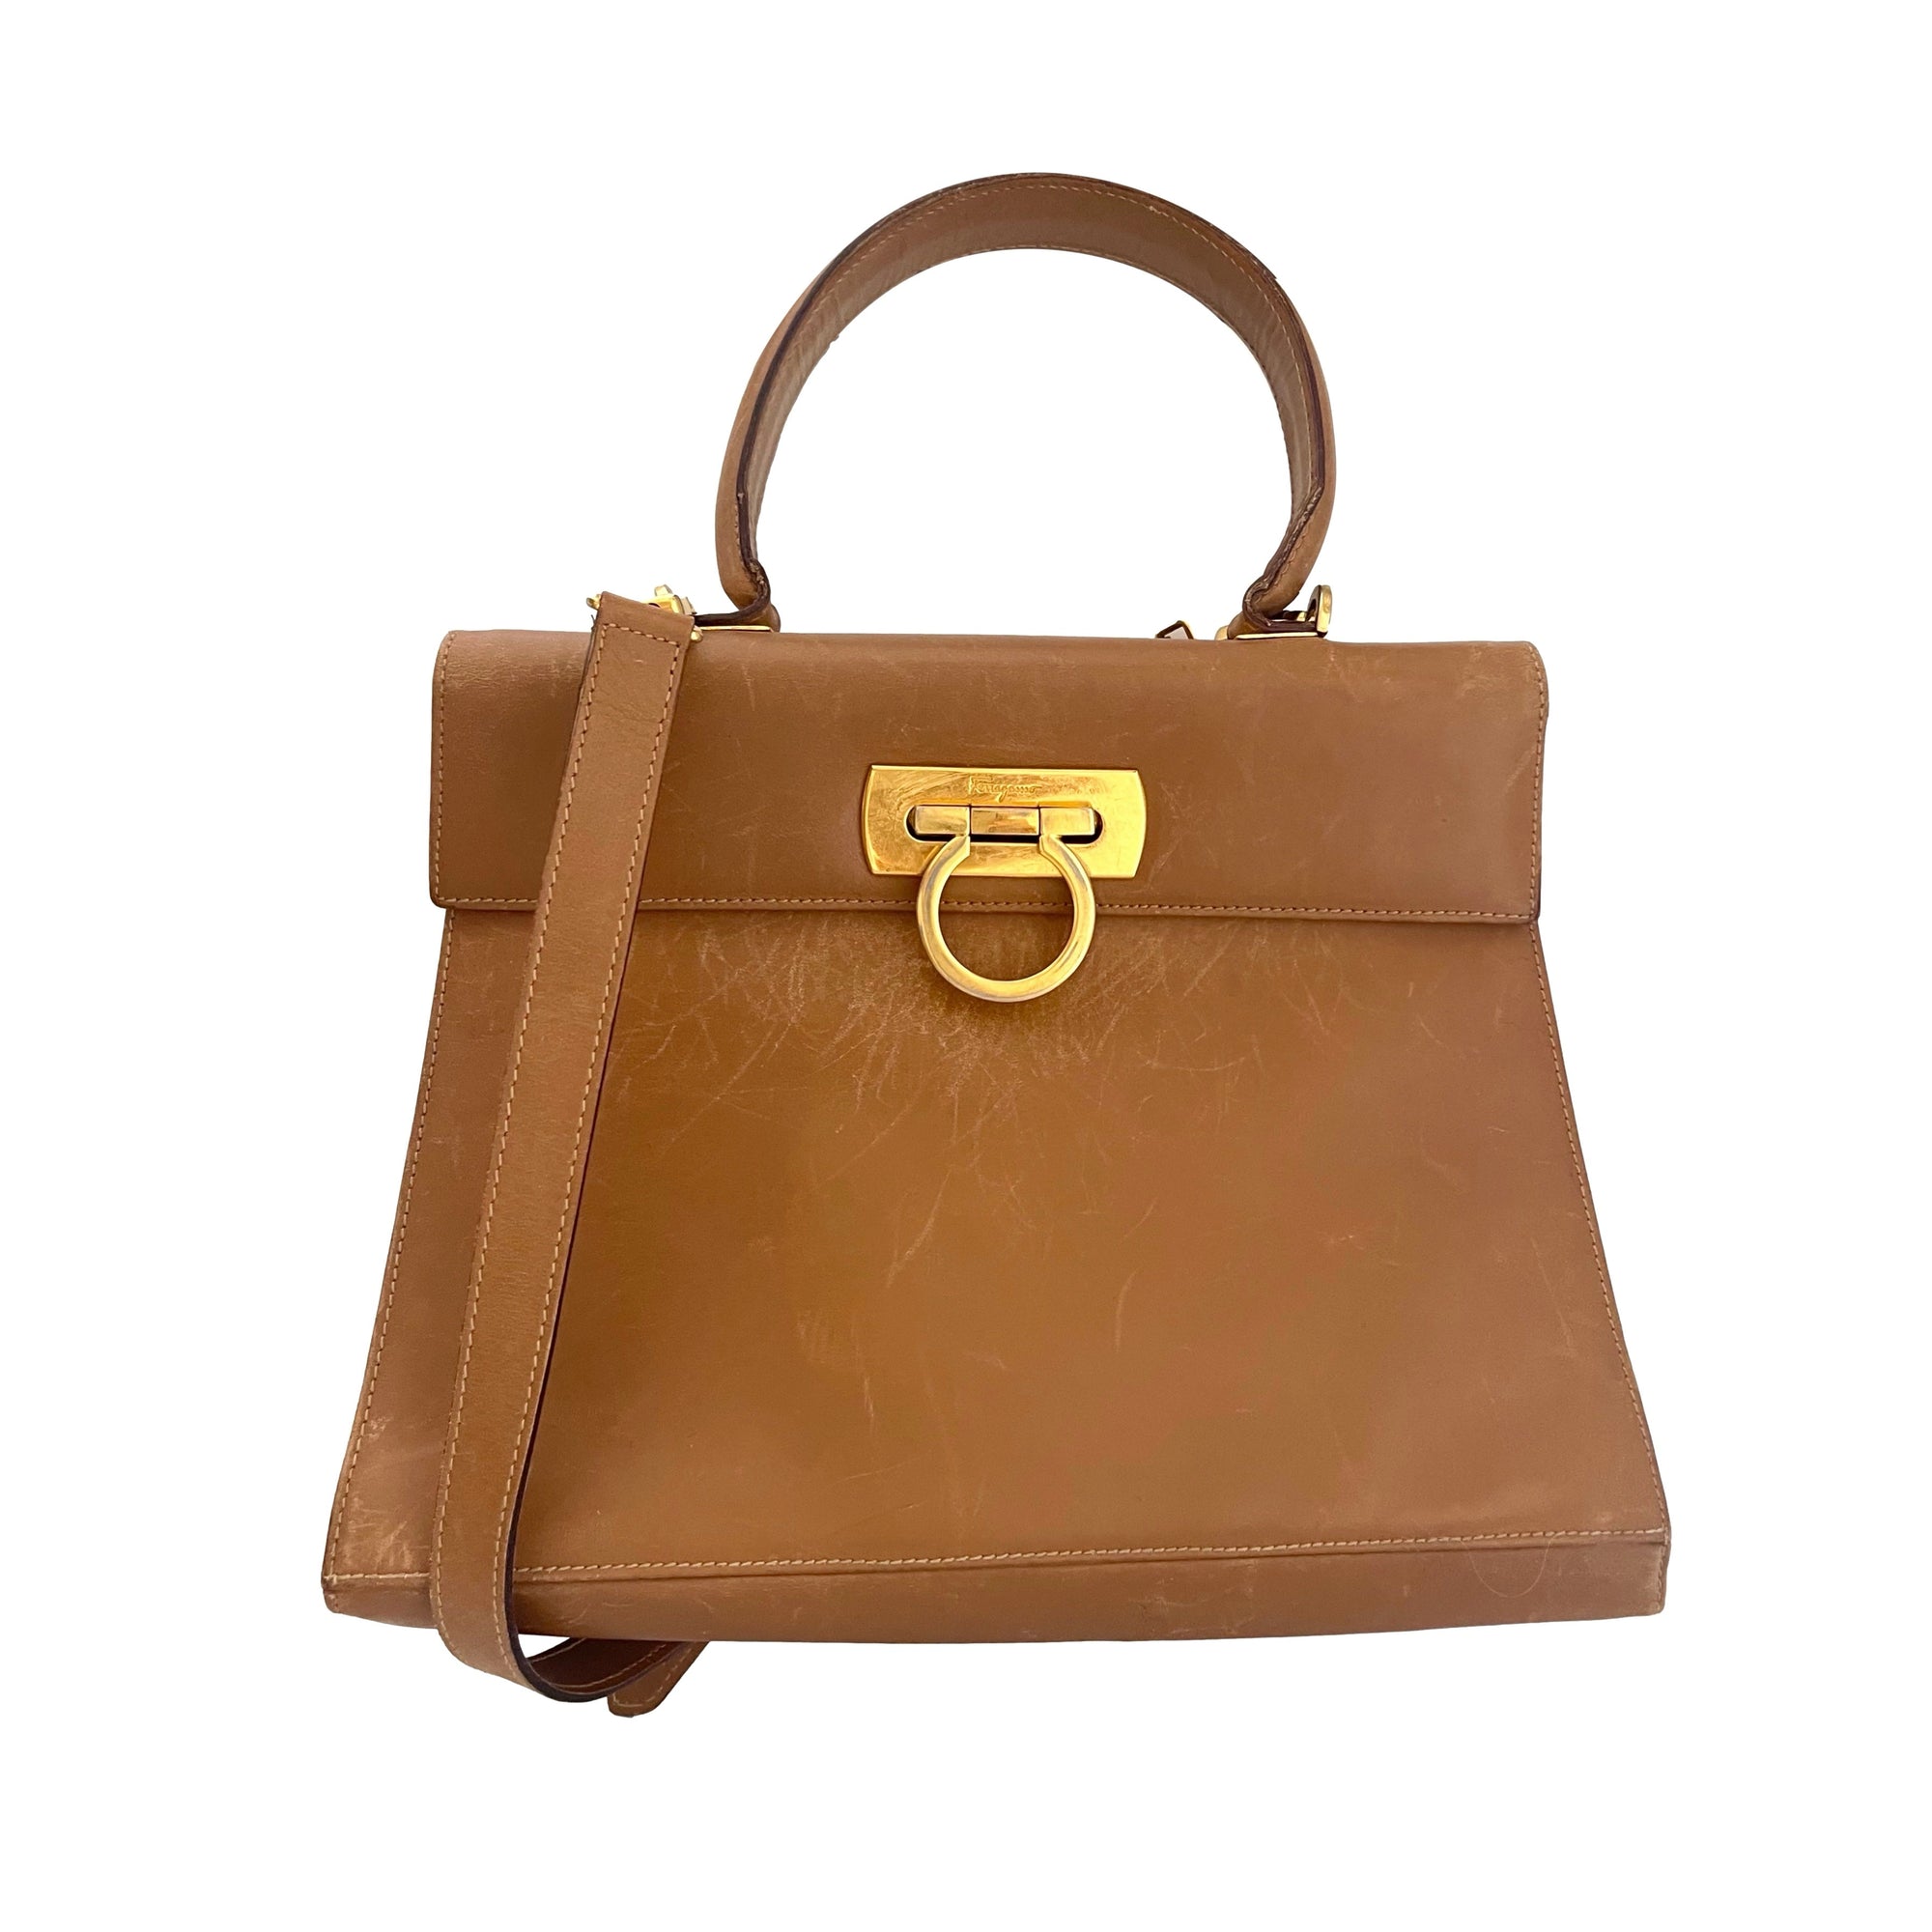 Salvatore Ferragamo Brown Structured Top Handle Bag - 